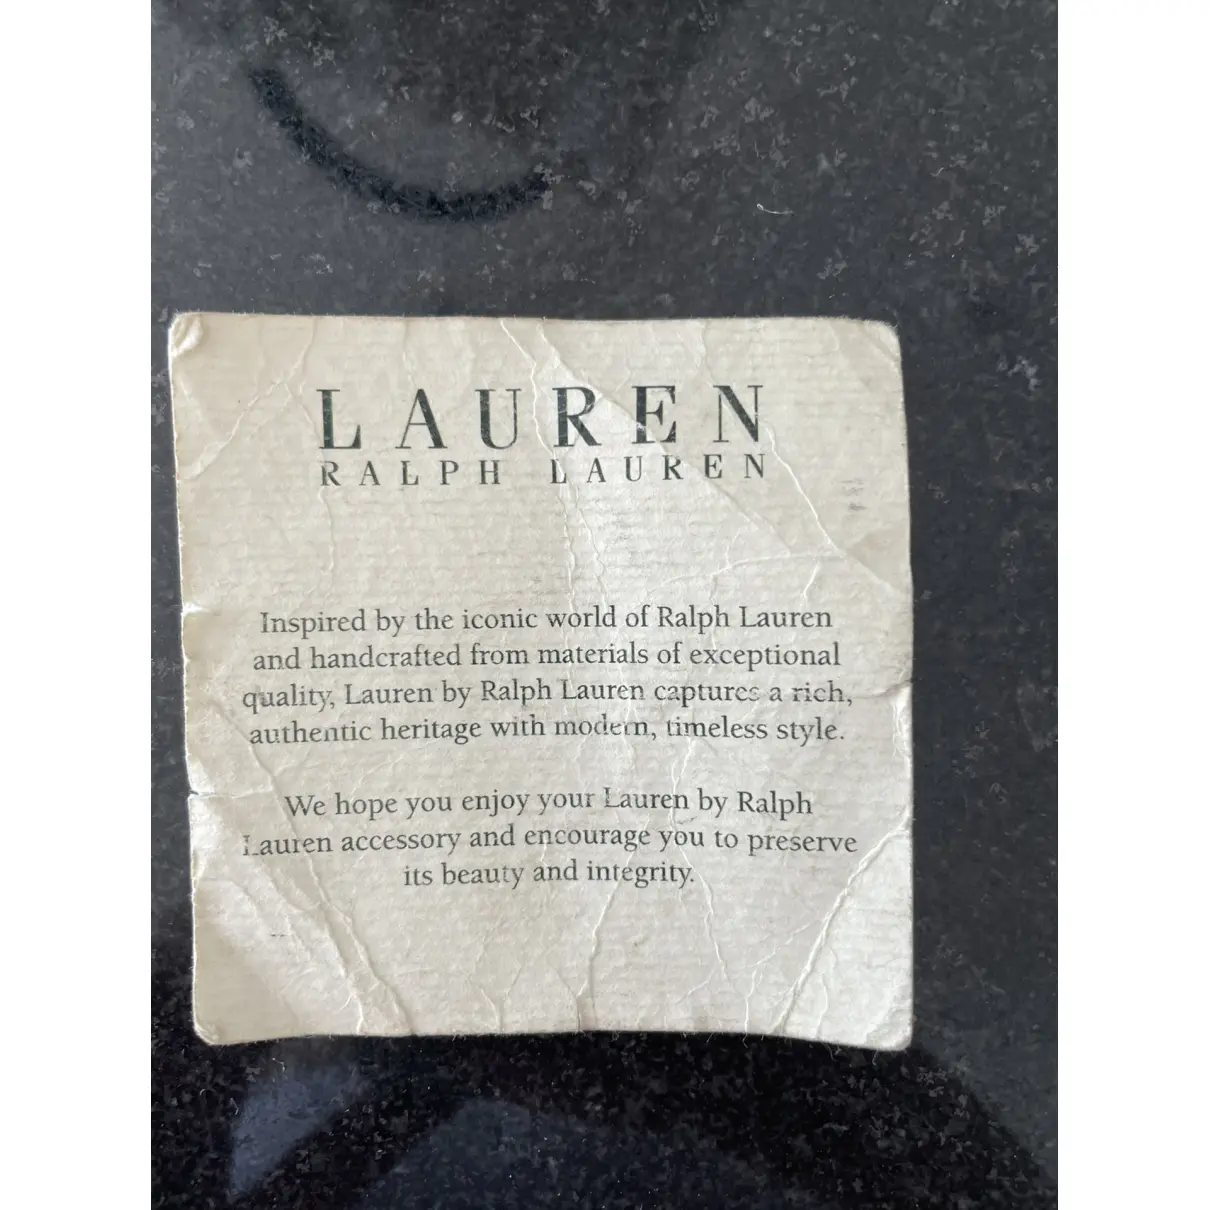 Buy Ralph Lauren Leather tote online